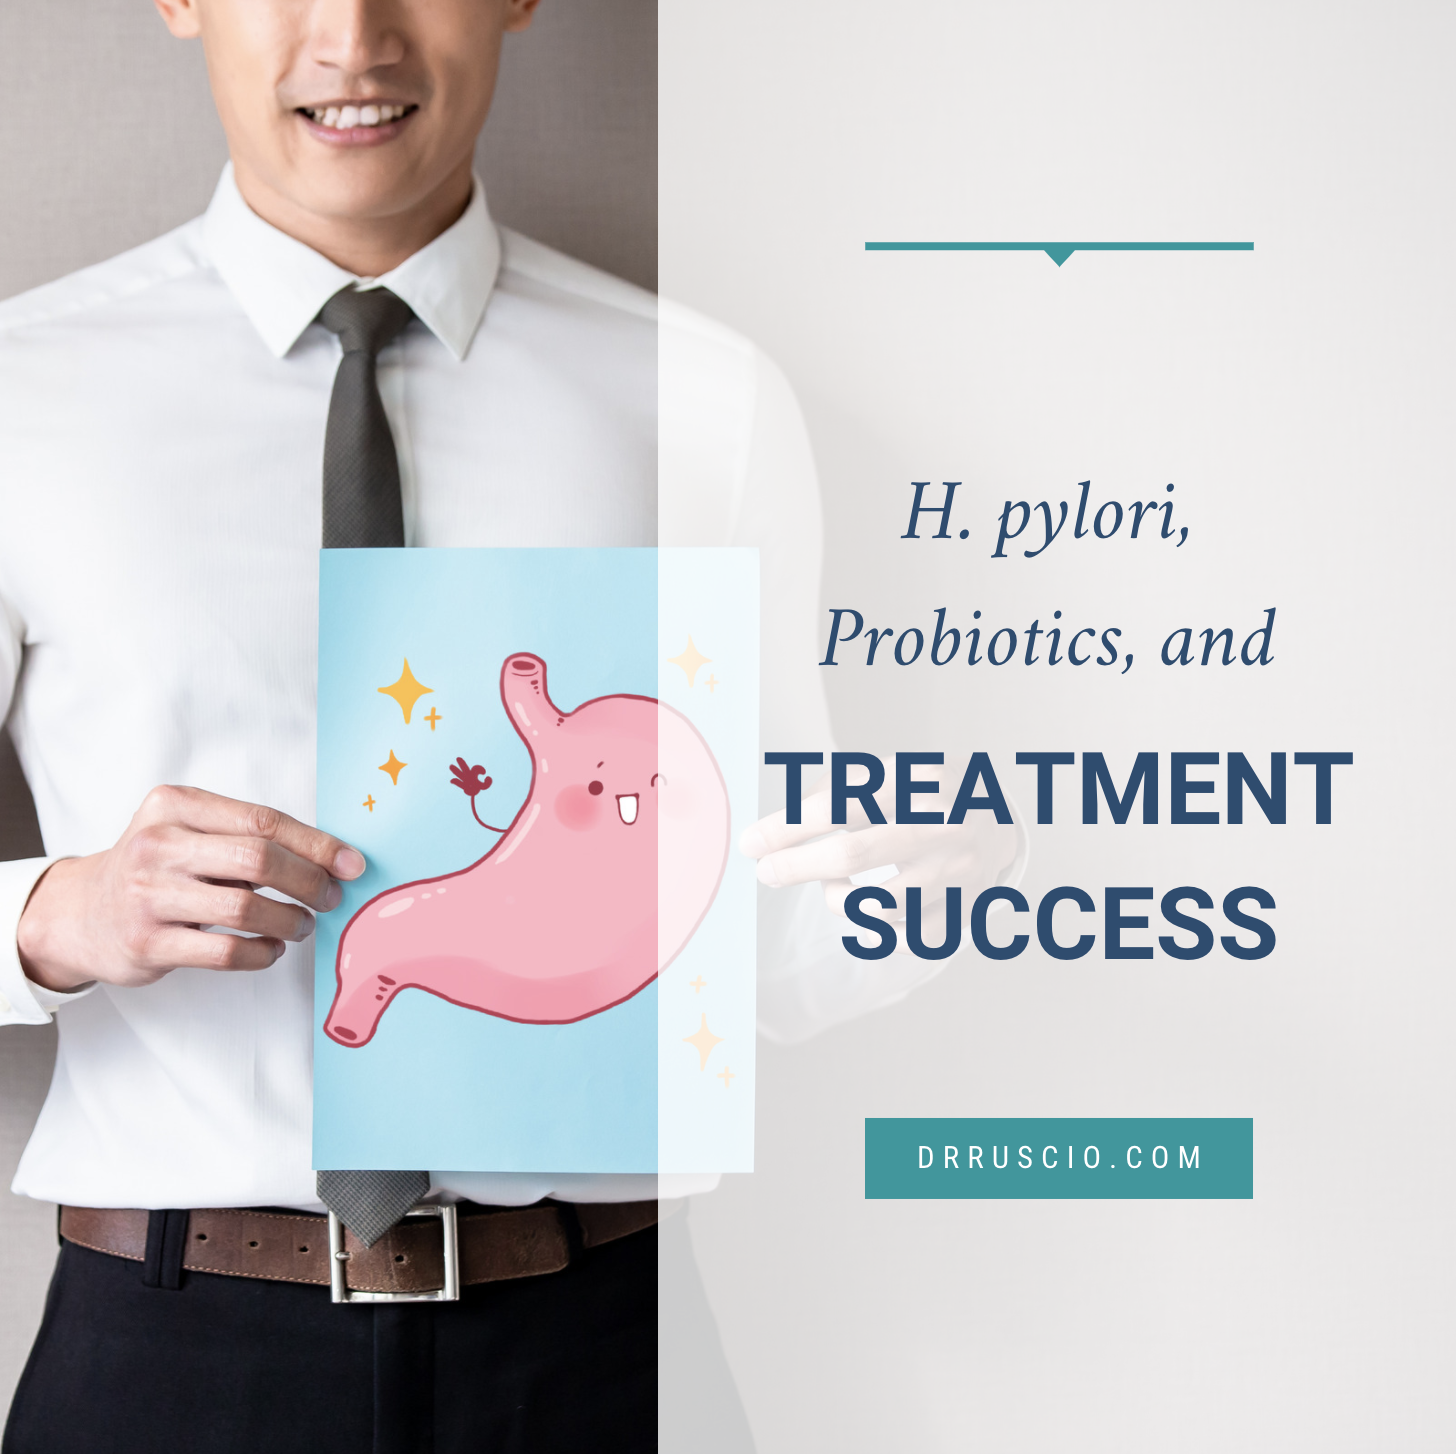 H pylori Probiotics, and Treatment Success